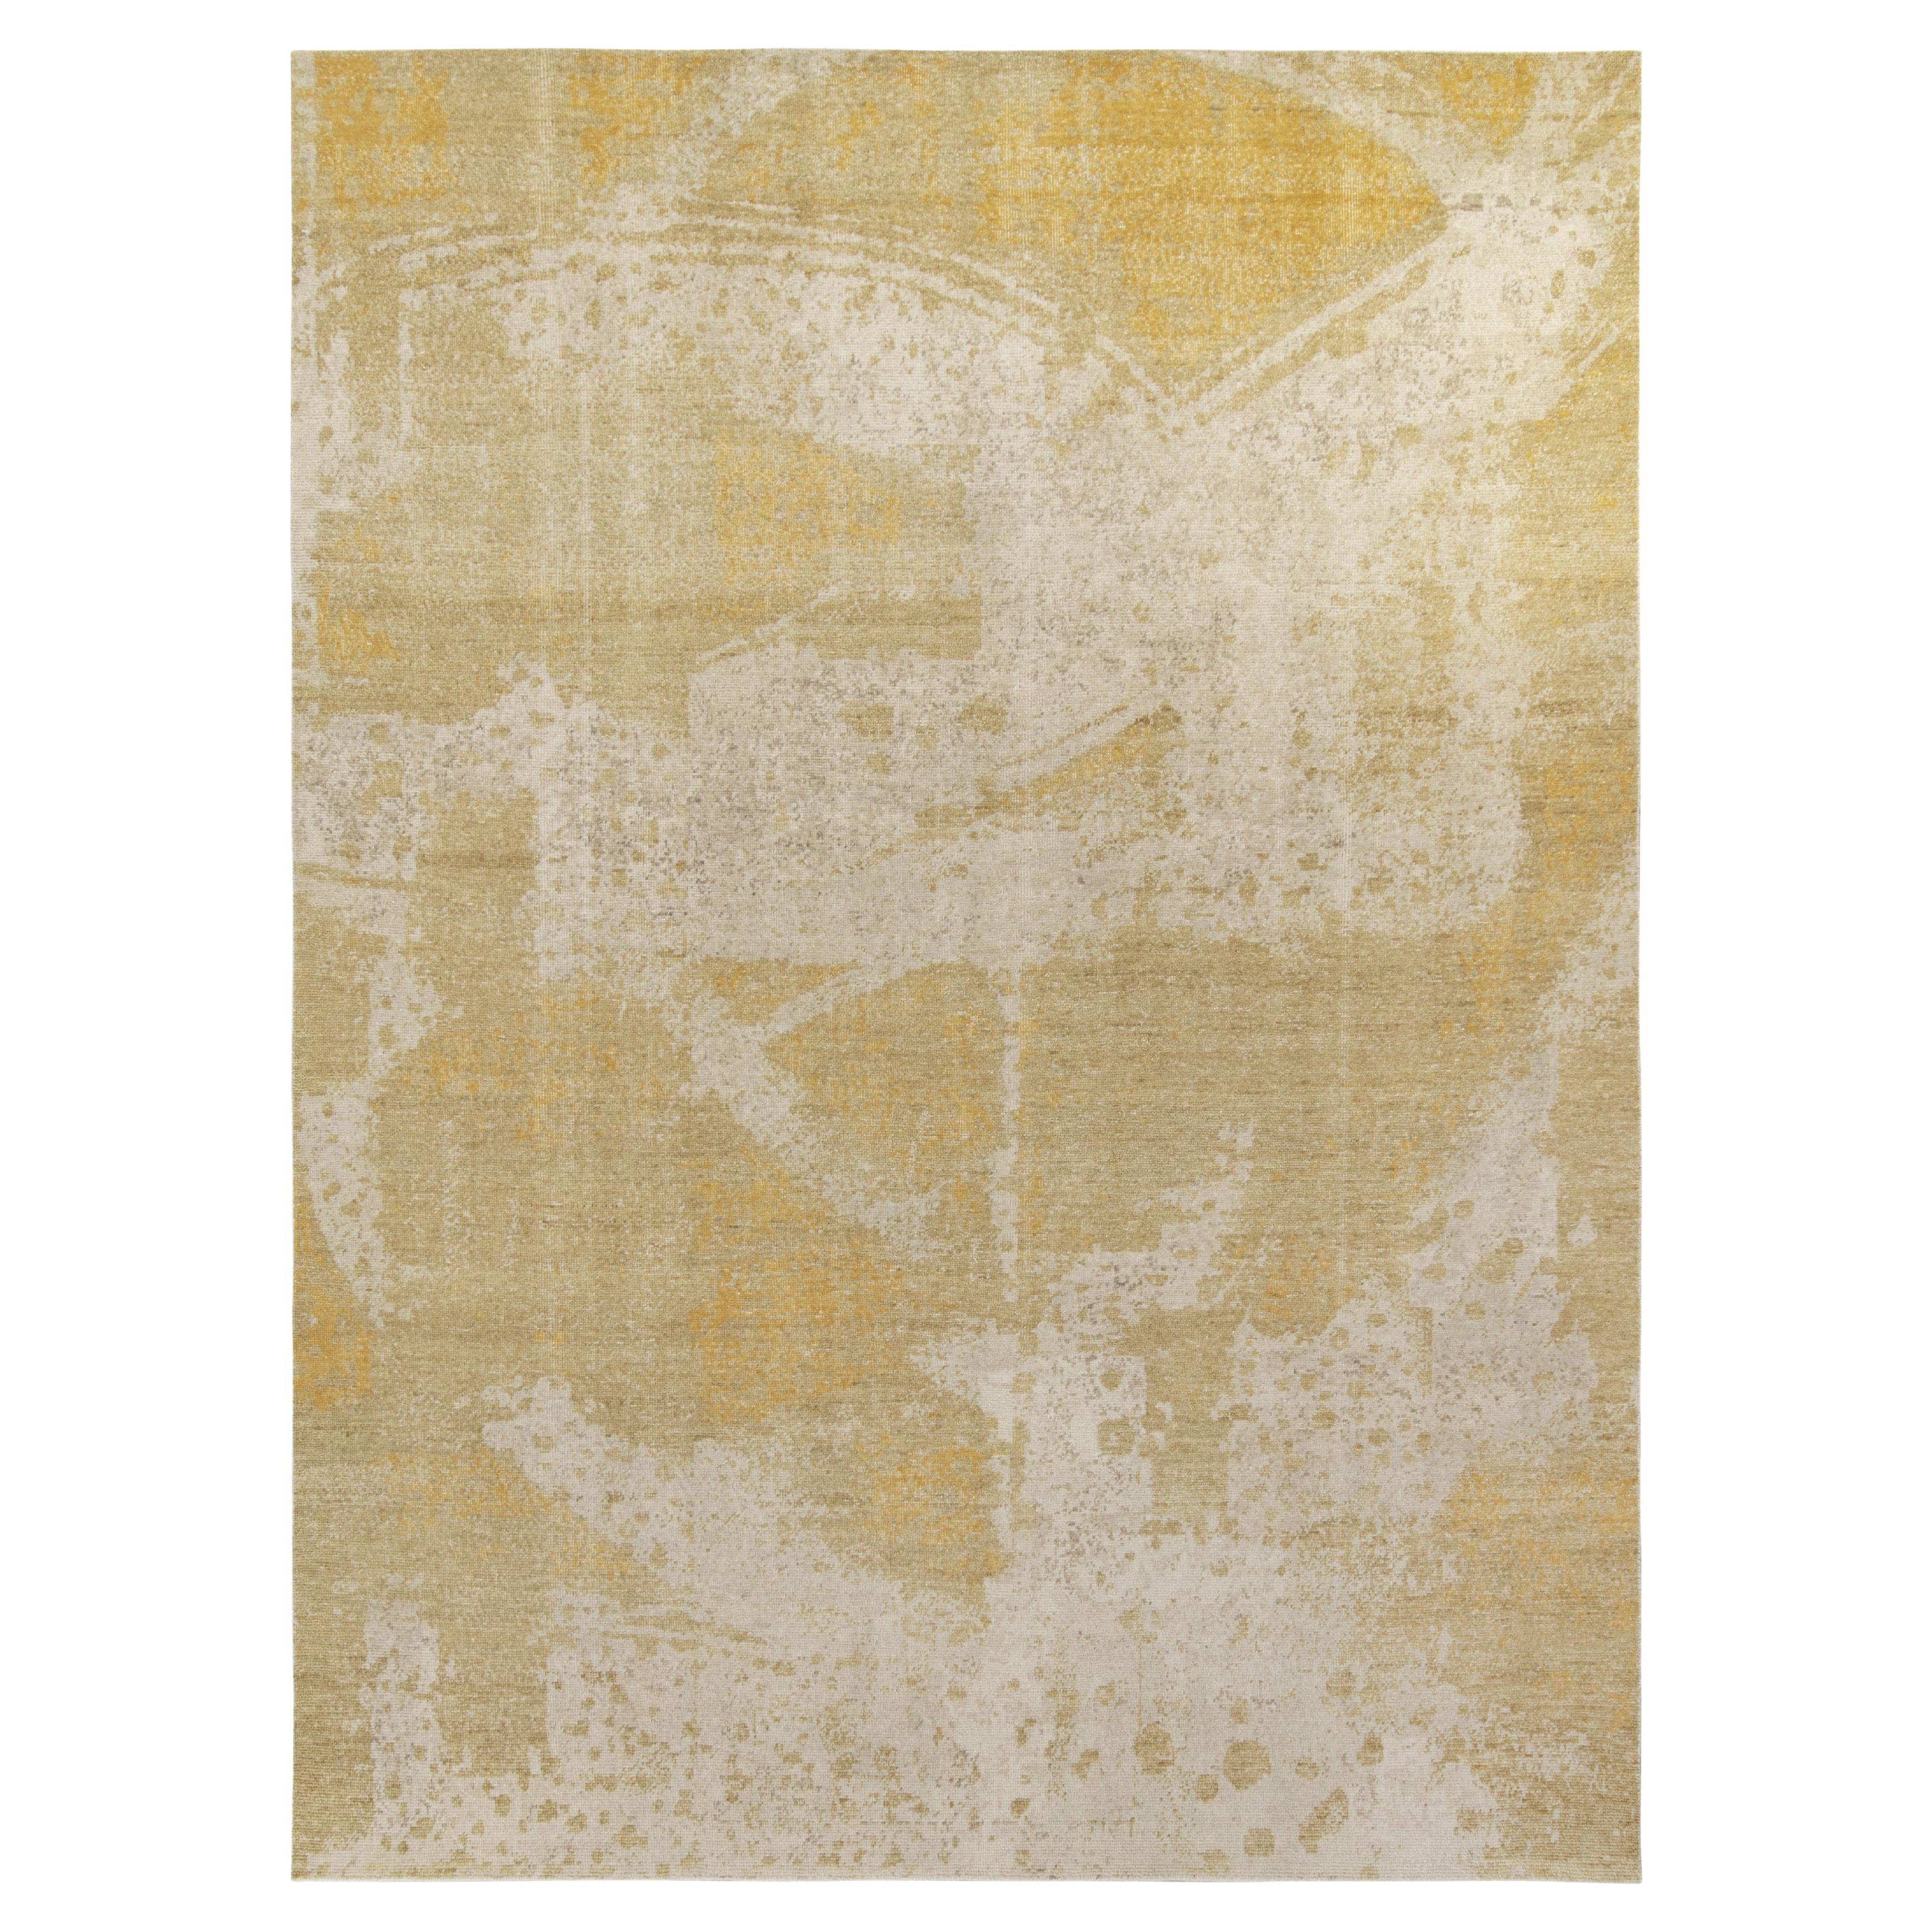 Tapis & Kilims - Tapis abstrait de style vieilli en beige et motif abstrait doré